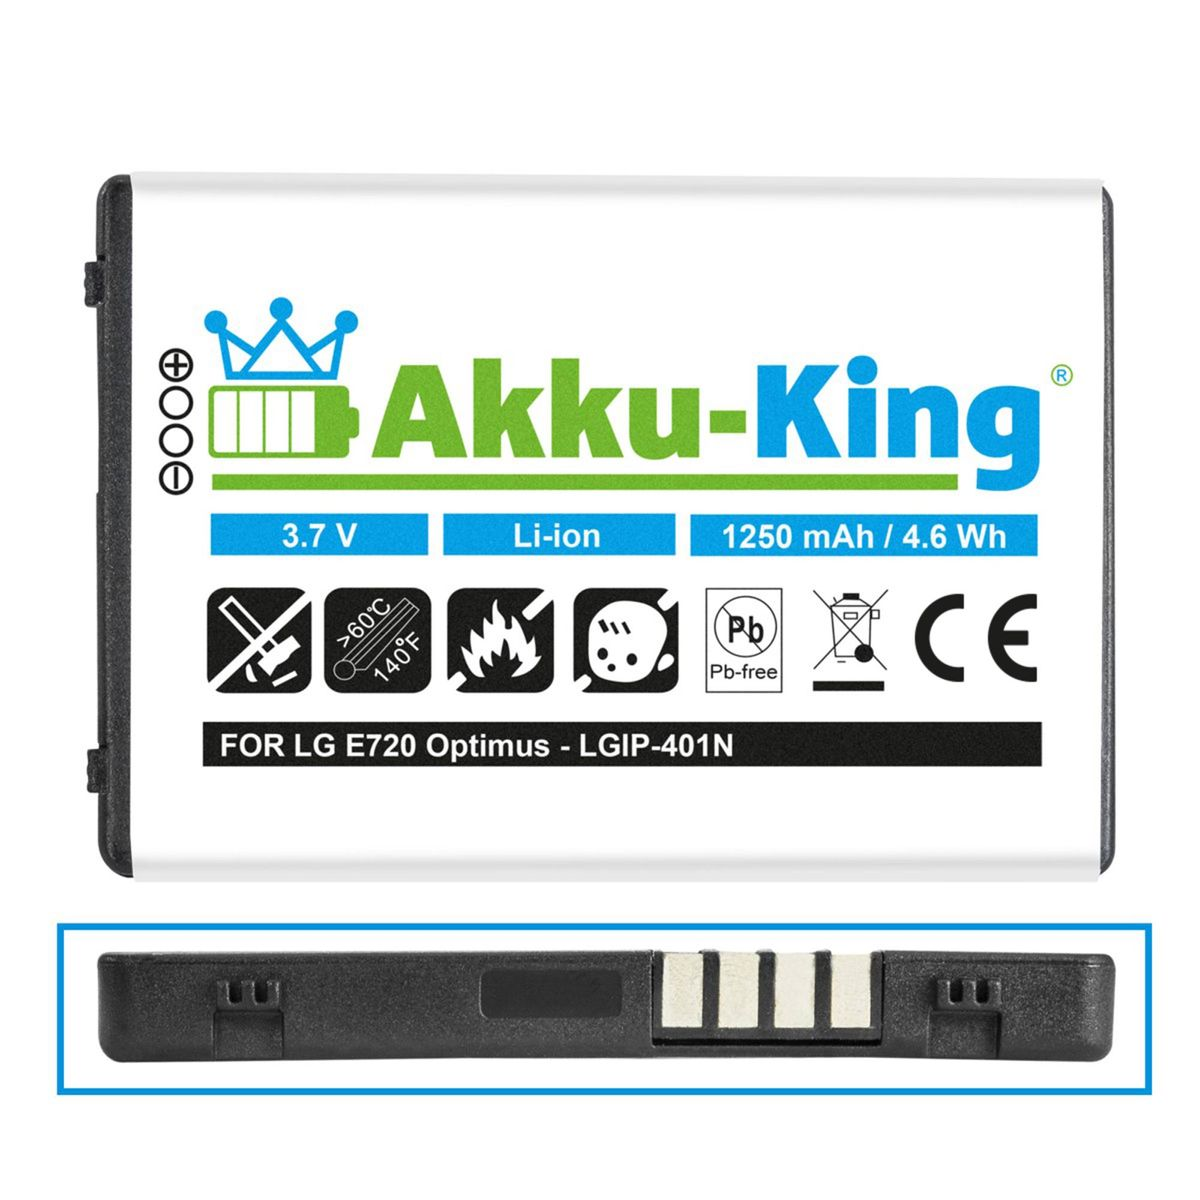 LG Li-Ion Akku mit Handy-Akku, 3.7 kompatibel 1250mAh Volt, AKKU-KING LGIP-401N